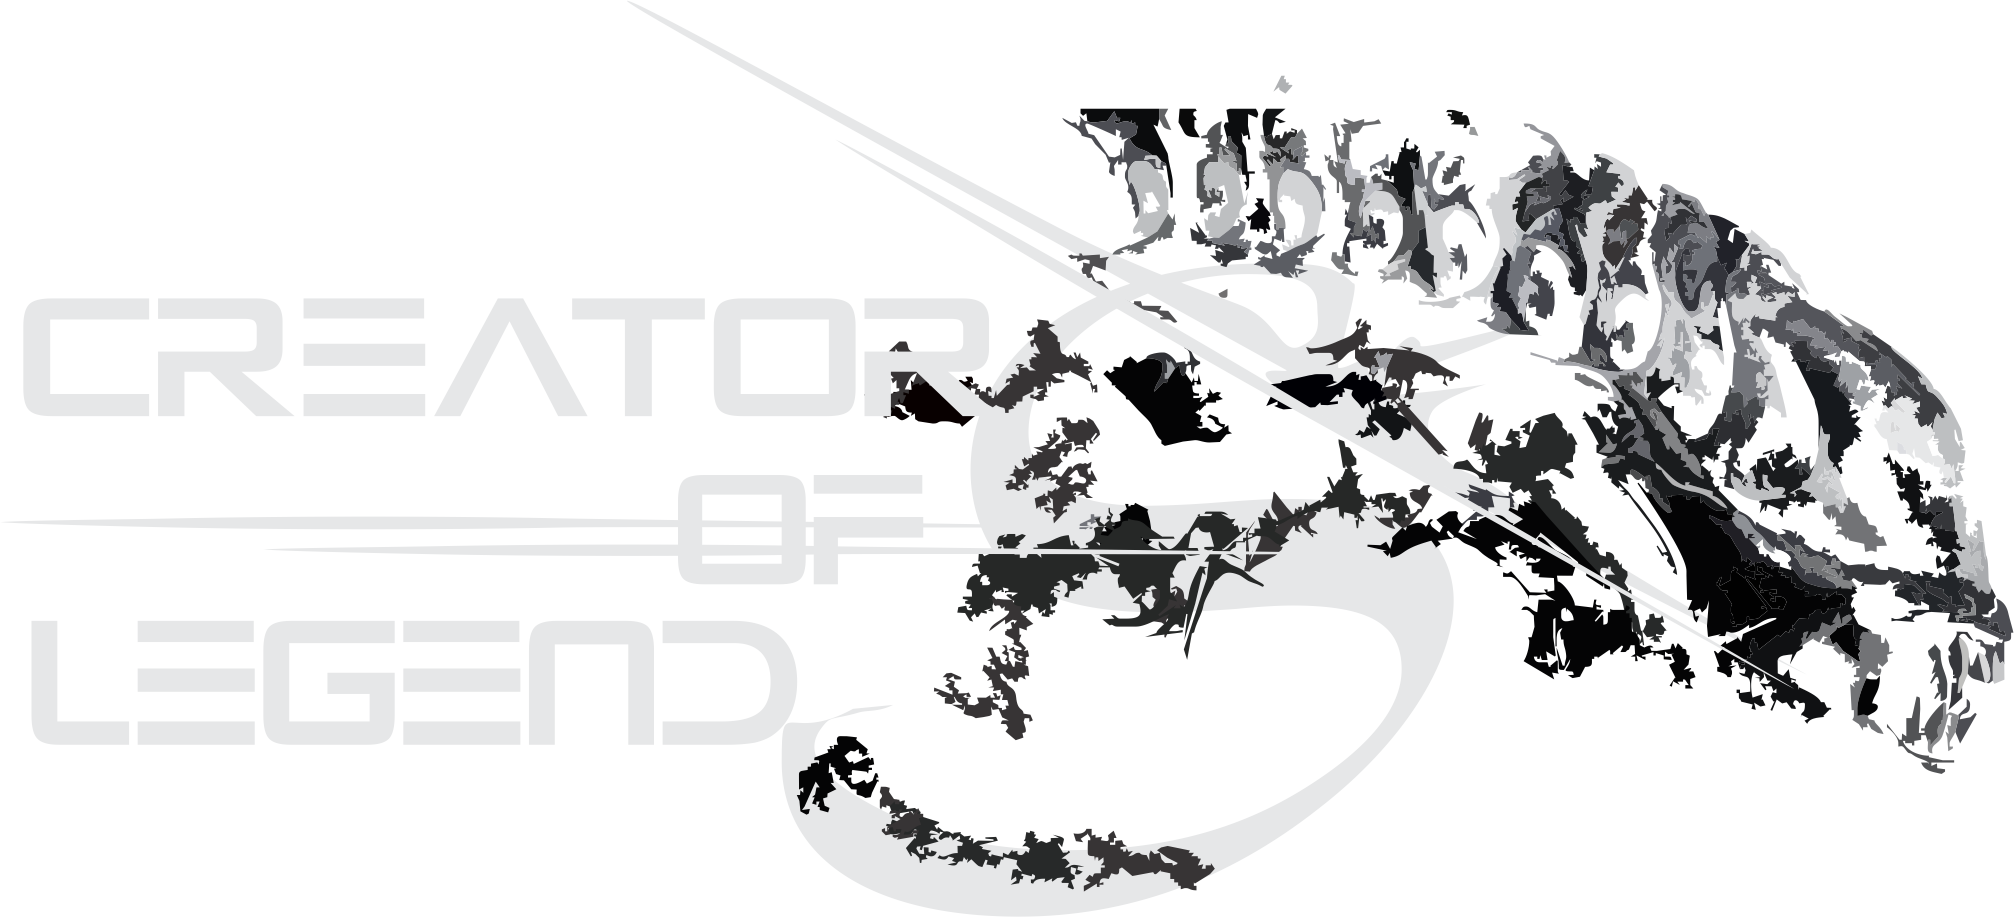 creators of legends - logotipo